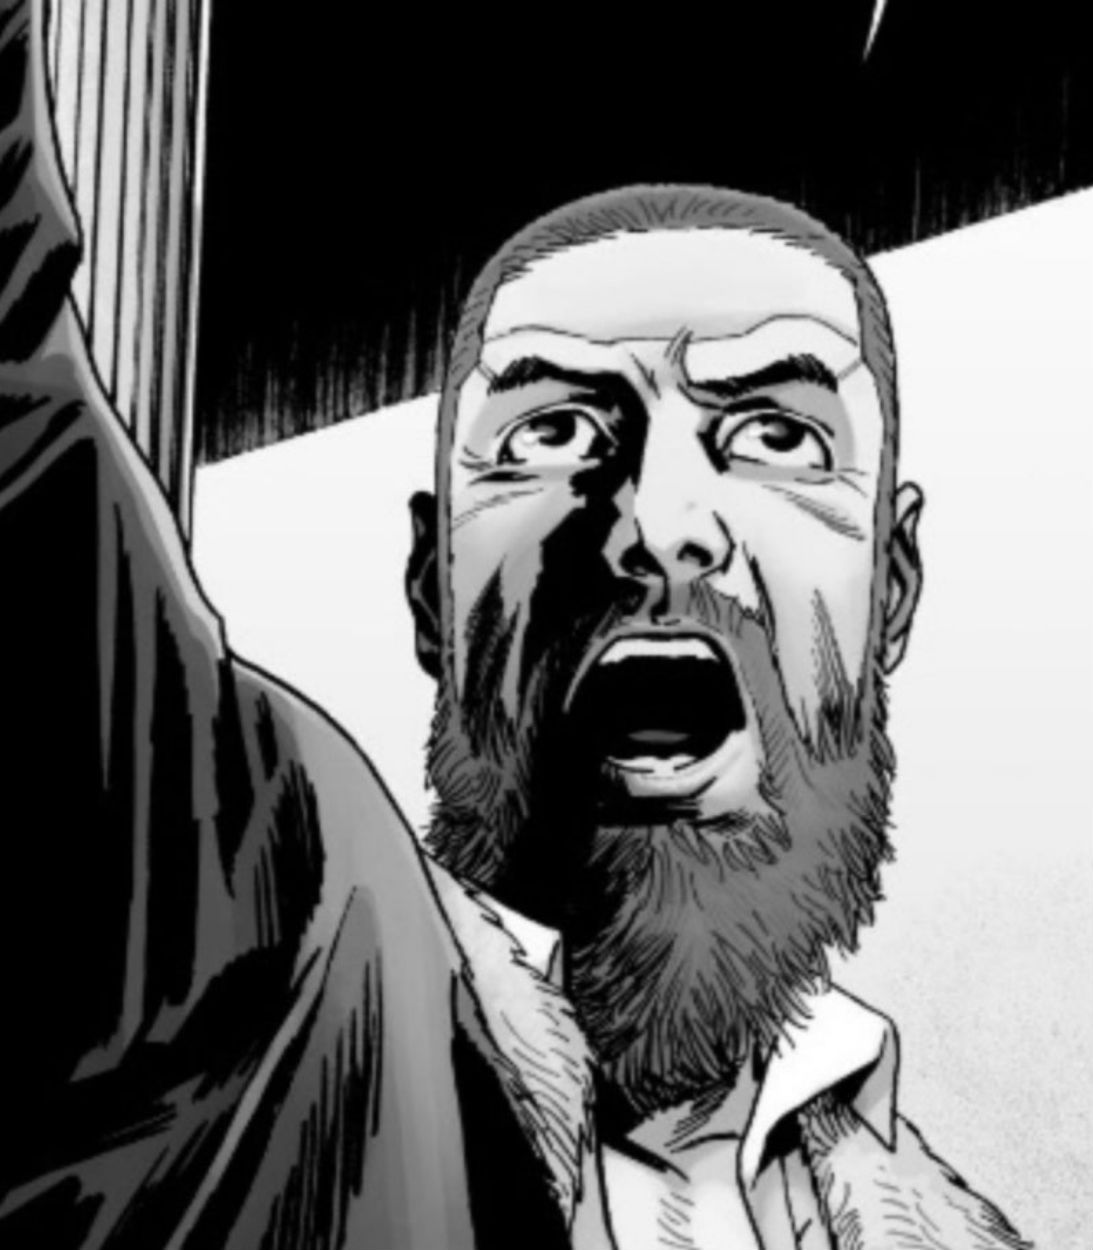 Rick gives a speech in Walking Dead comics